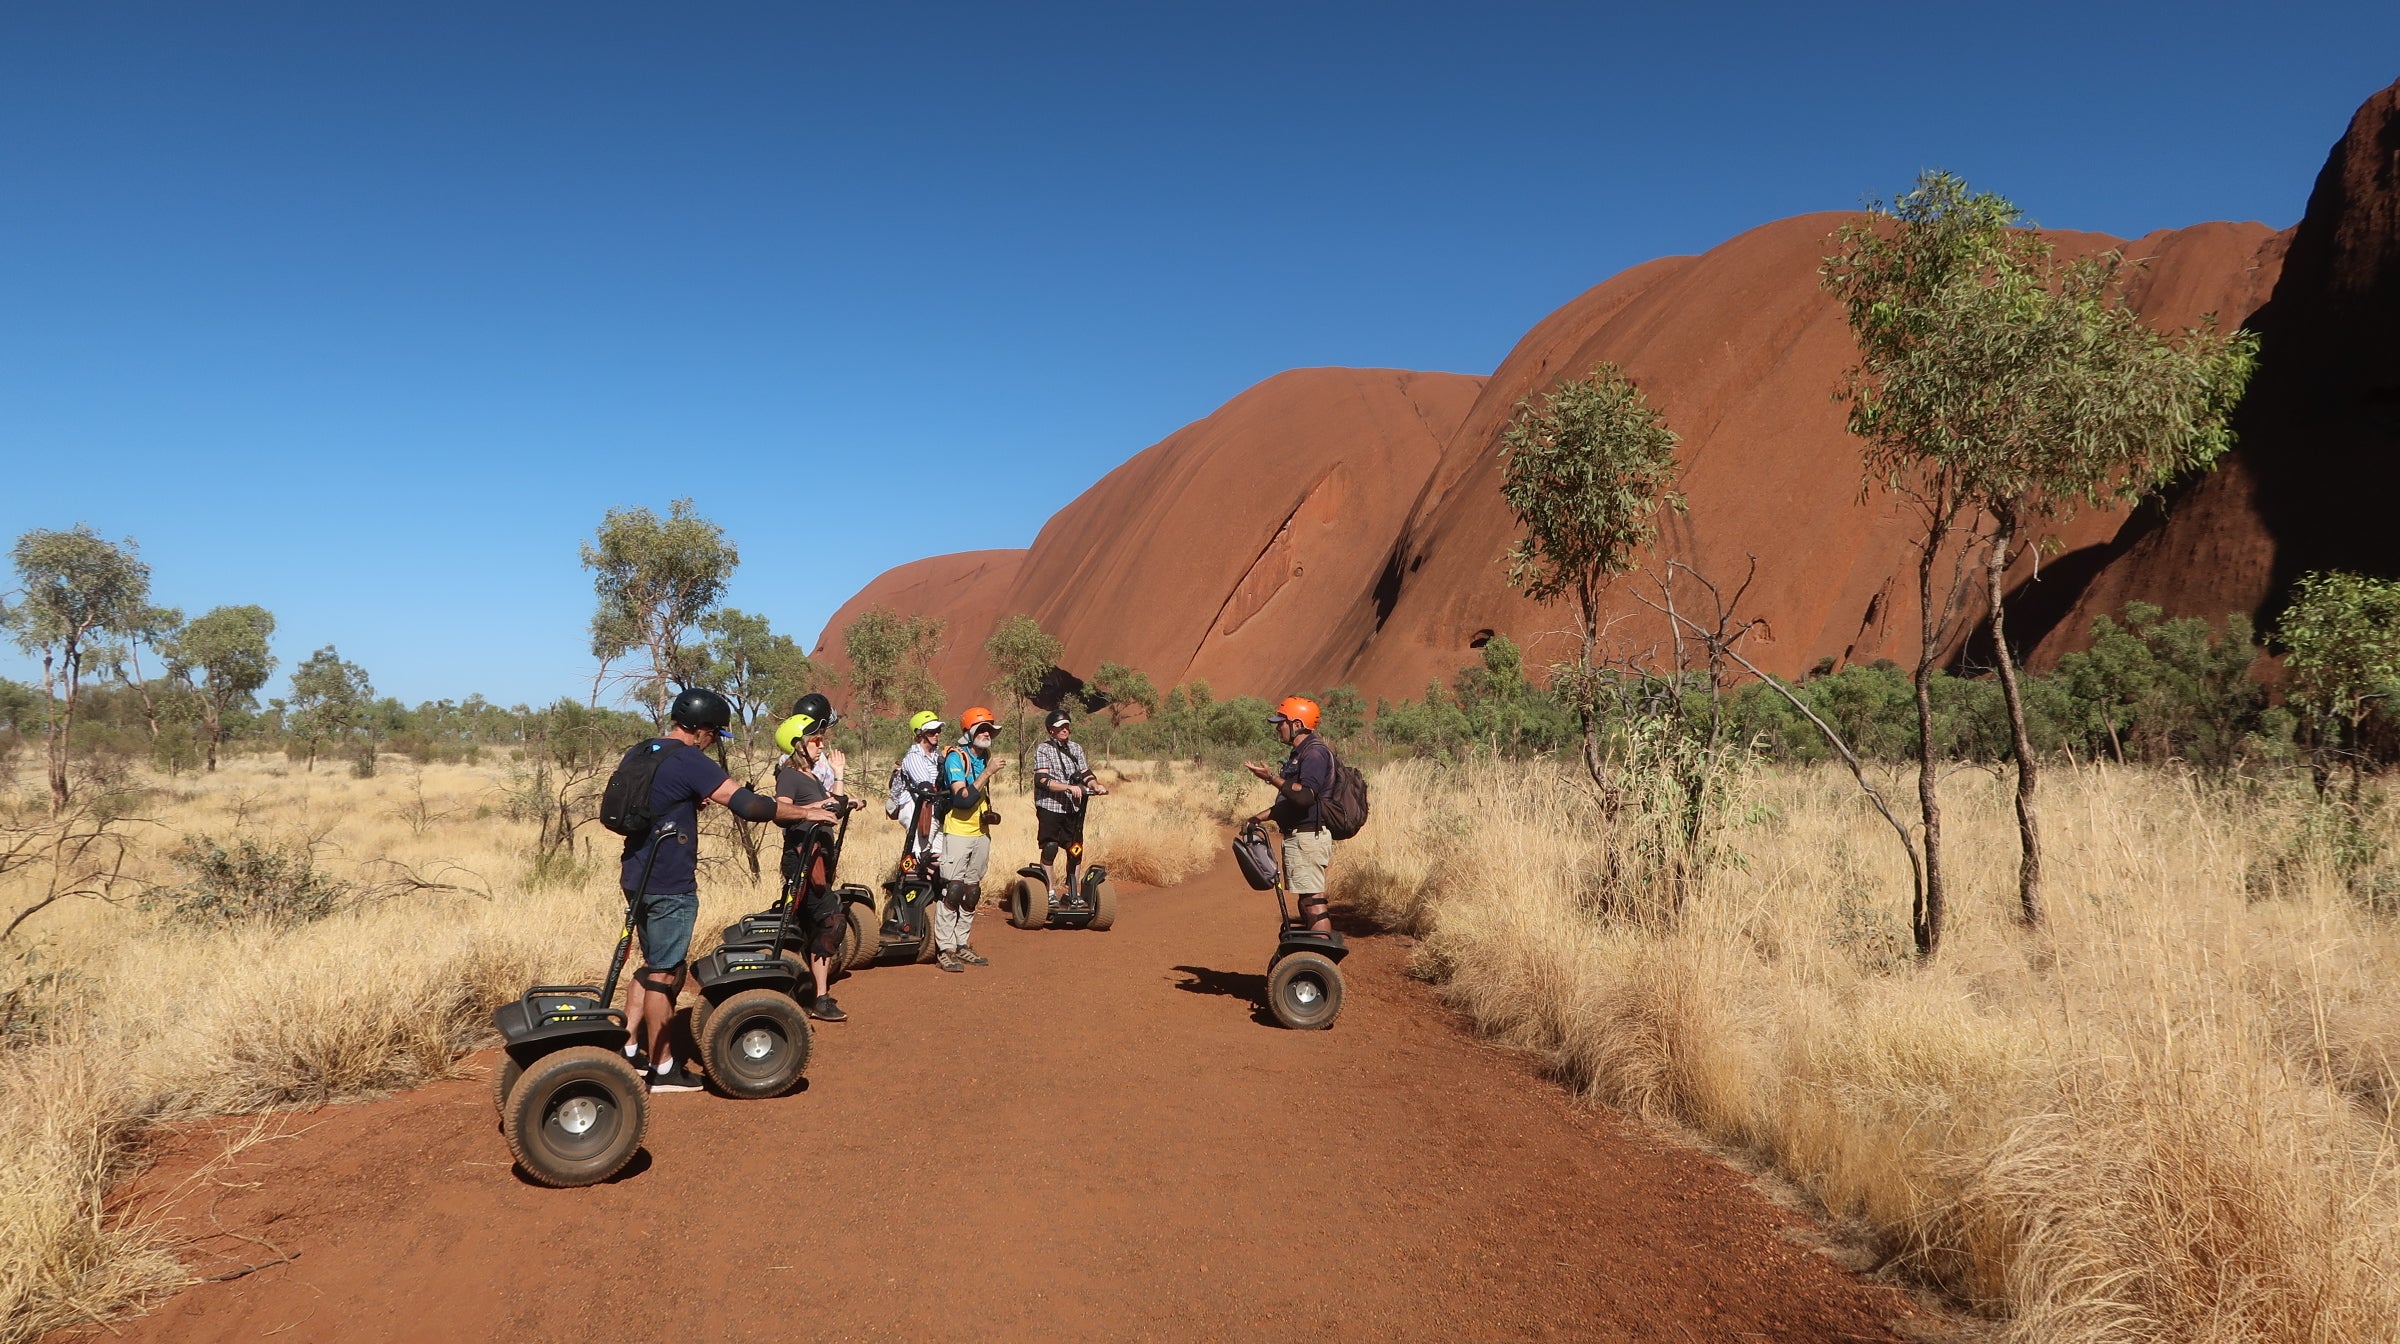 Rent a Segway or a bike to explore Uluru